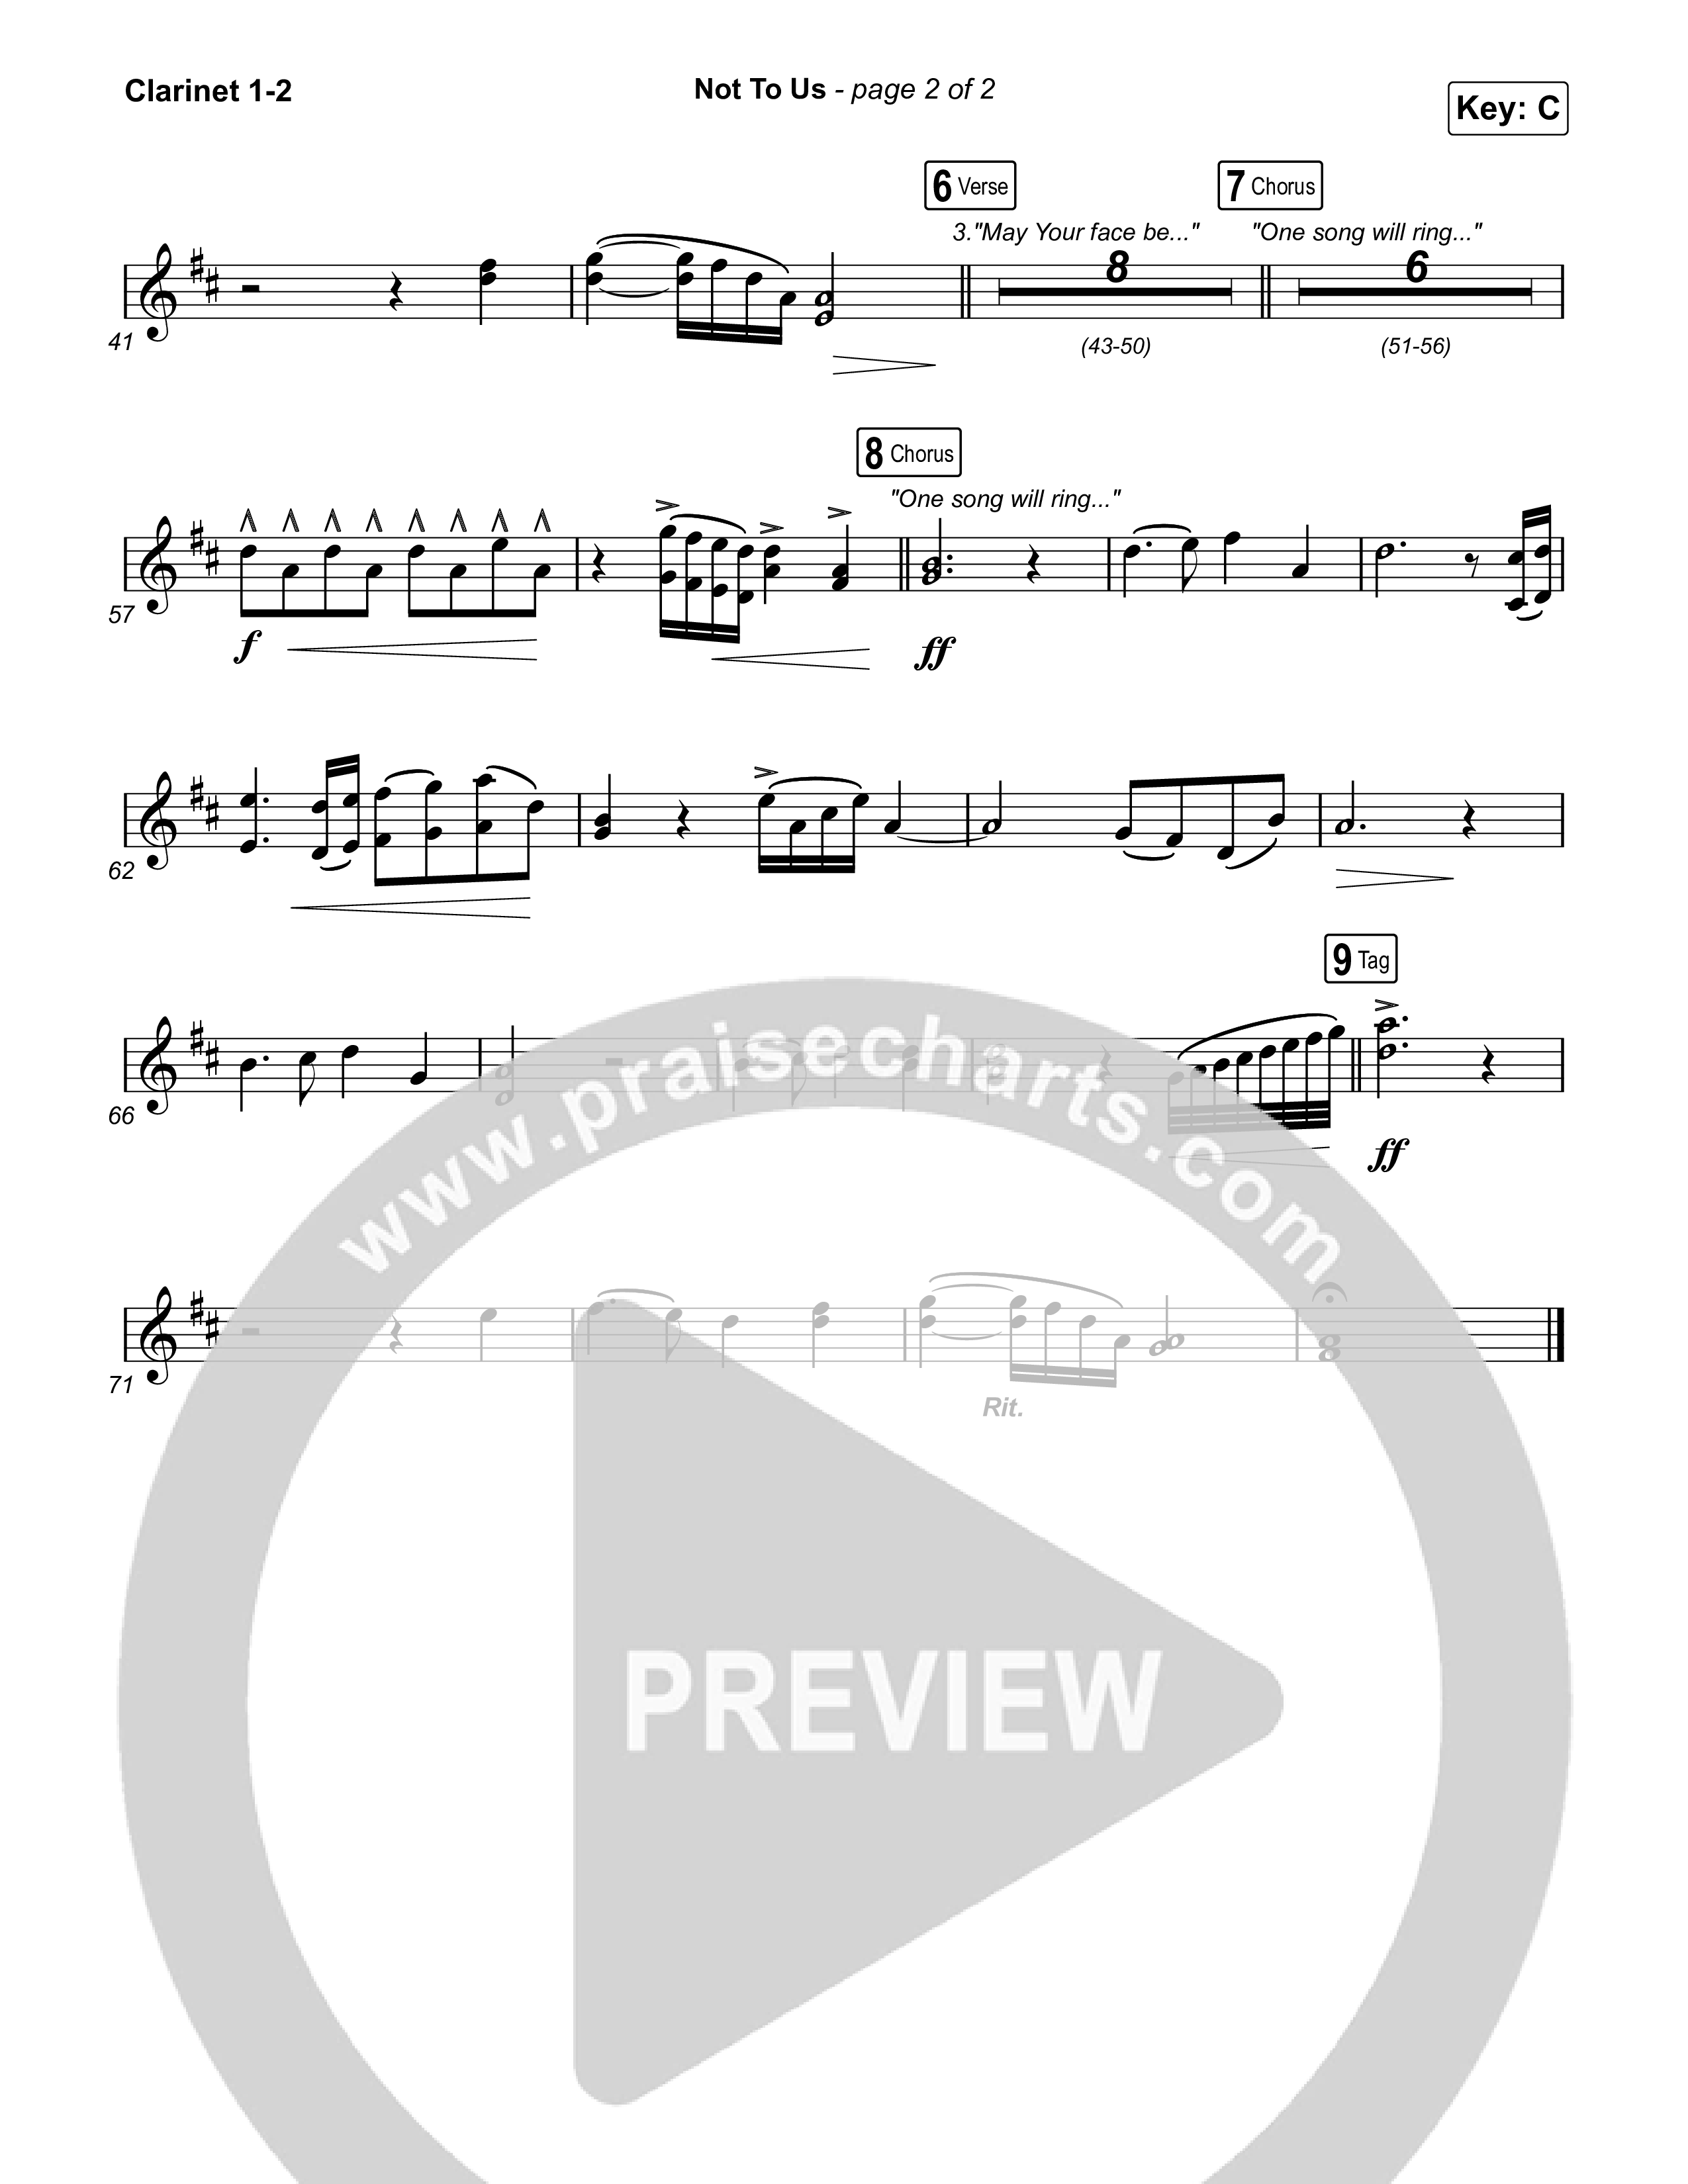 Not to Us (One Name Forever Shall Be Praised) Clarinet 1,2 (Matt Papa / Matt Boswell / Matt Redman)